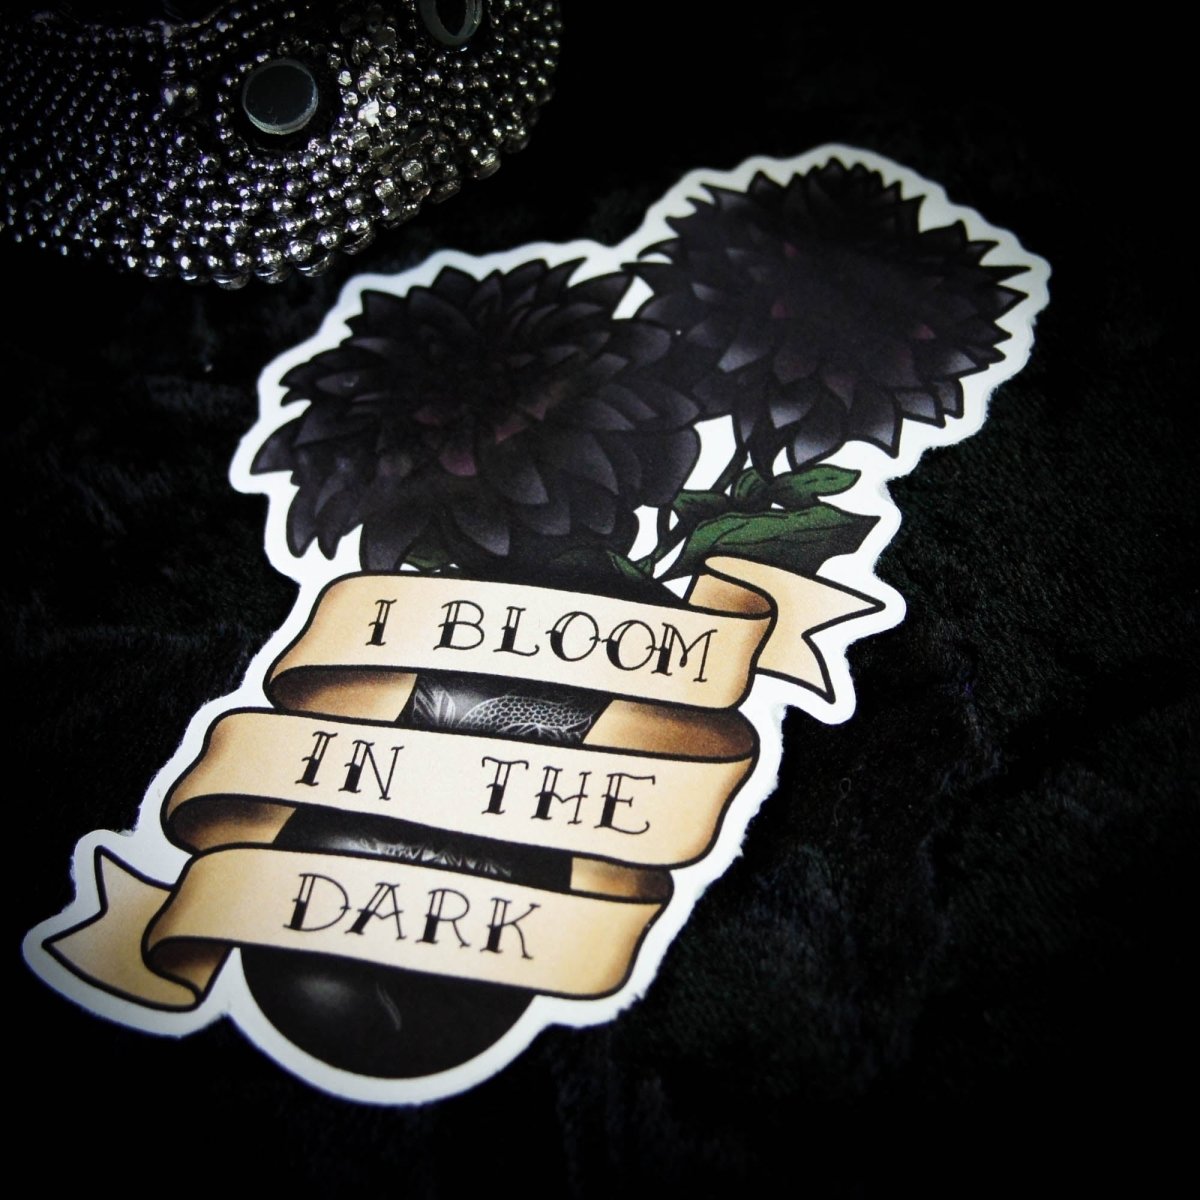 Dark Academia Sticker Pack - I bloom in the dark